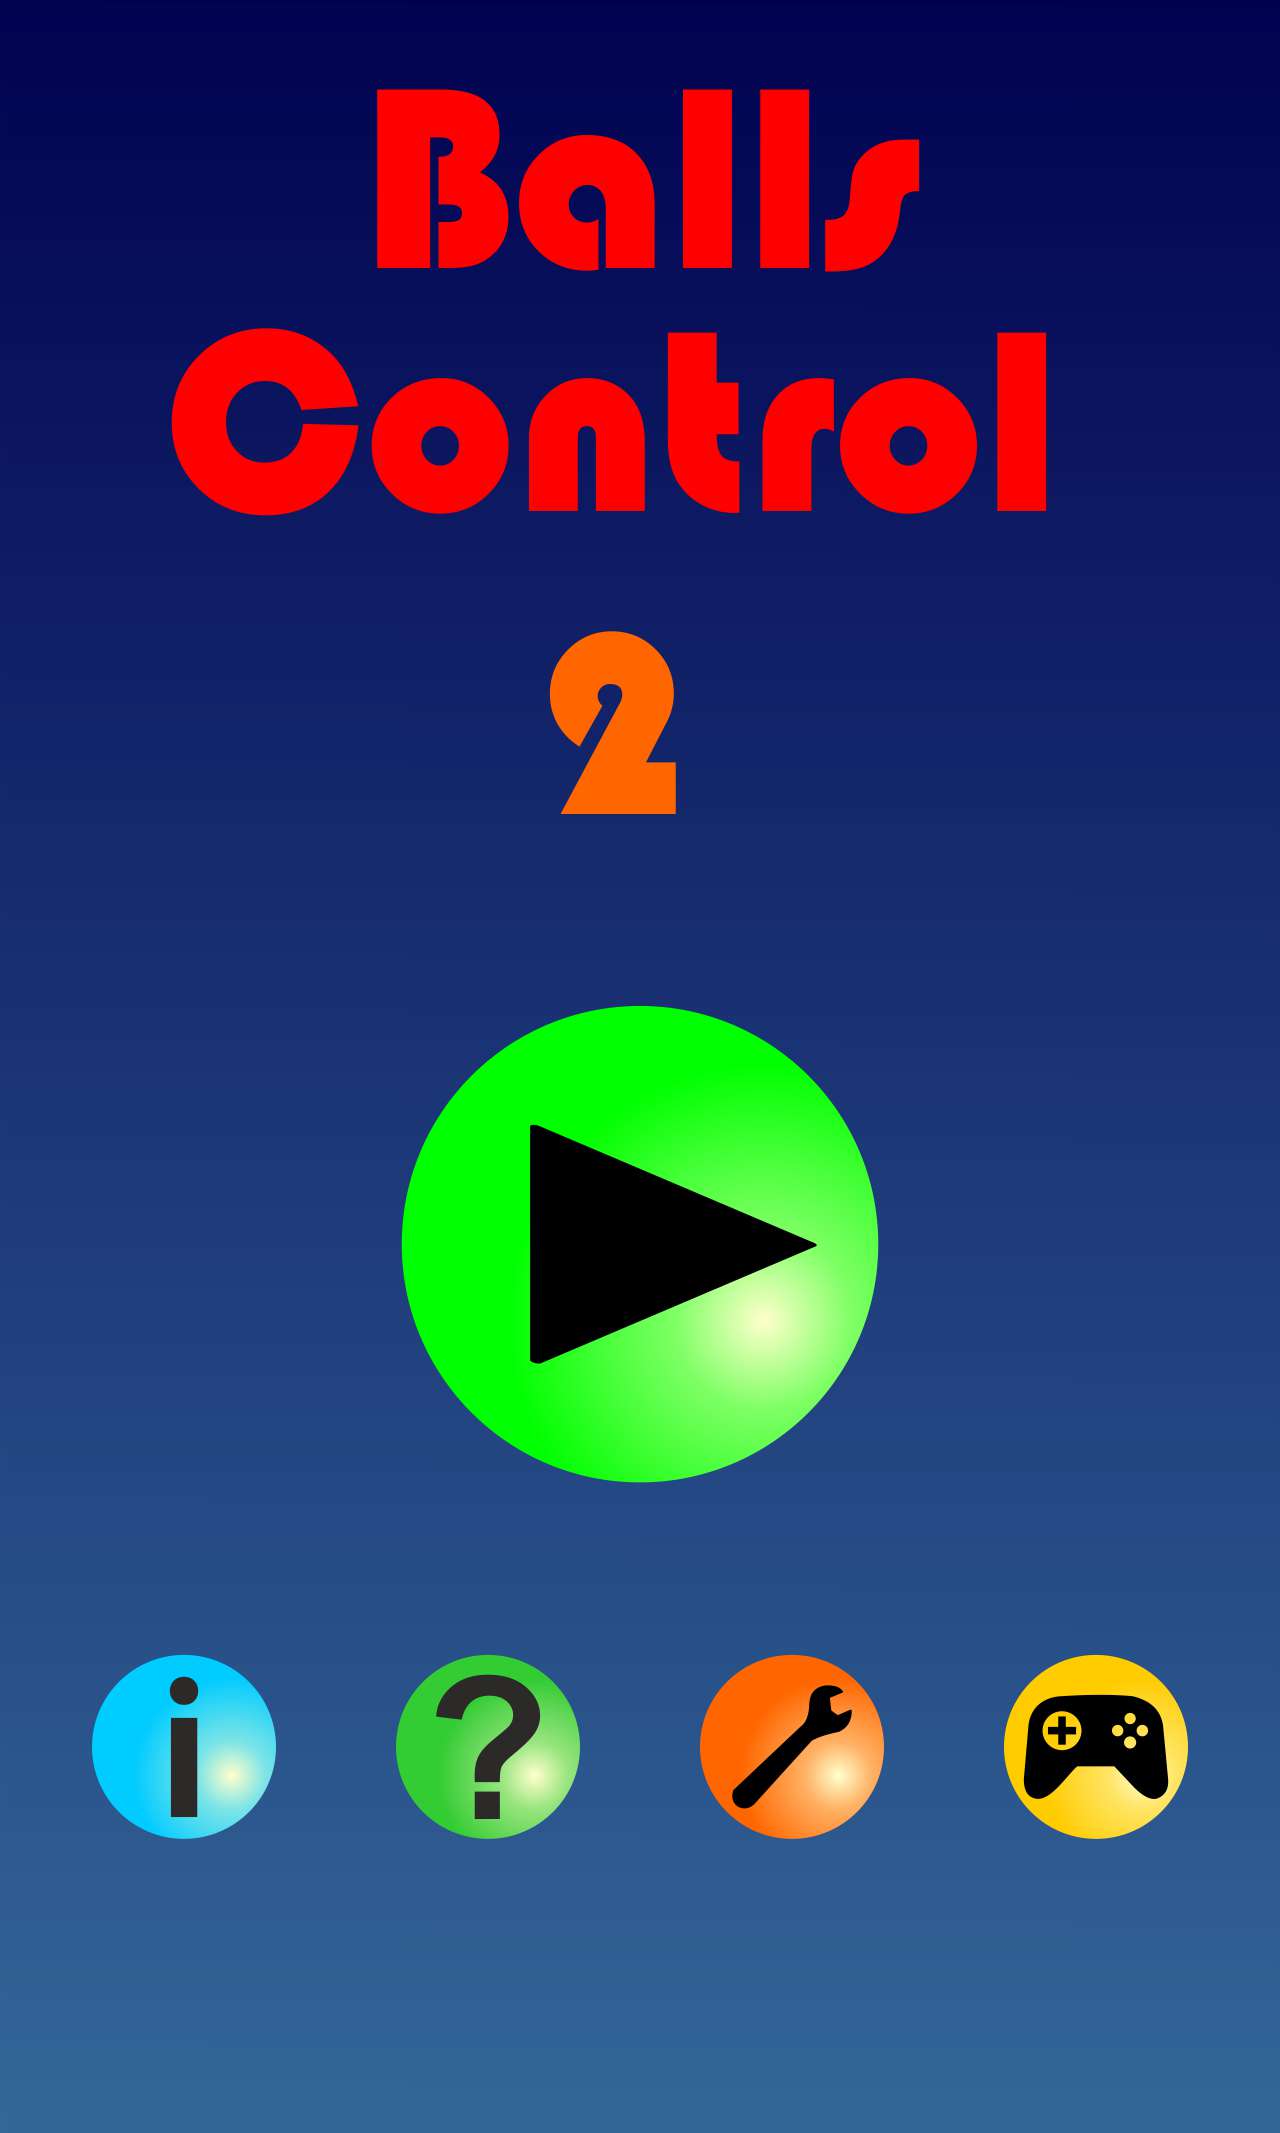 Balls Control 2